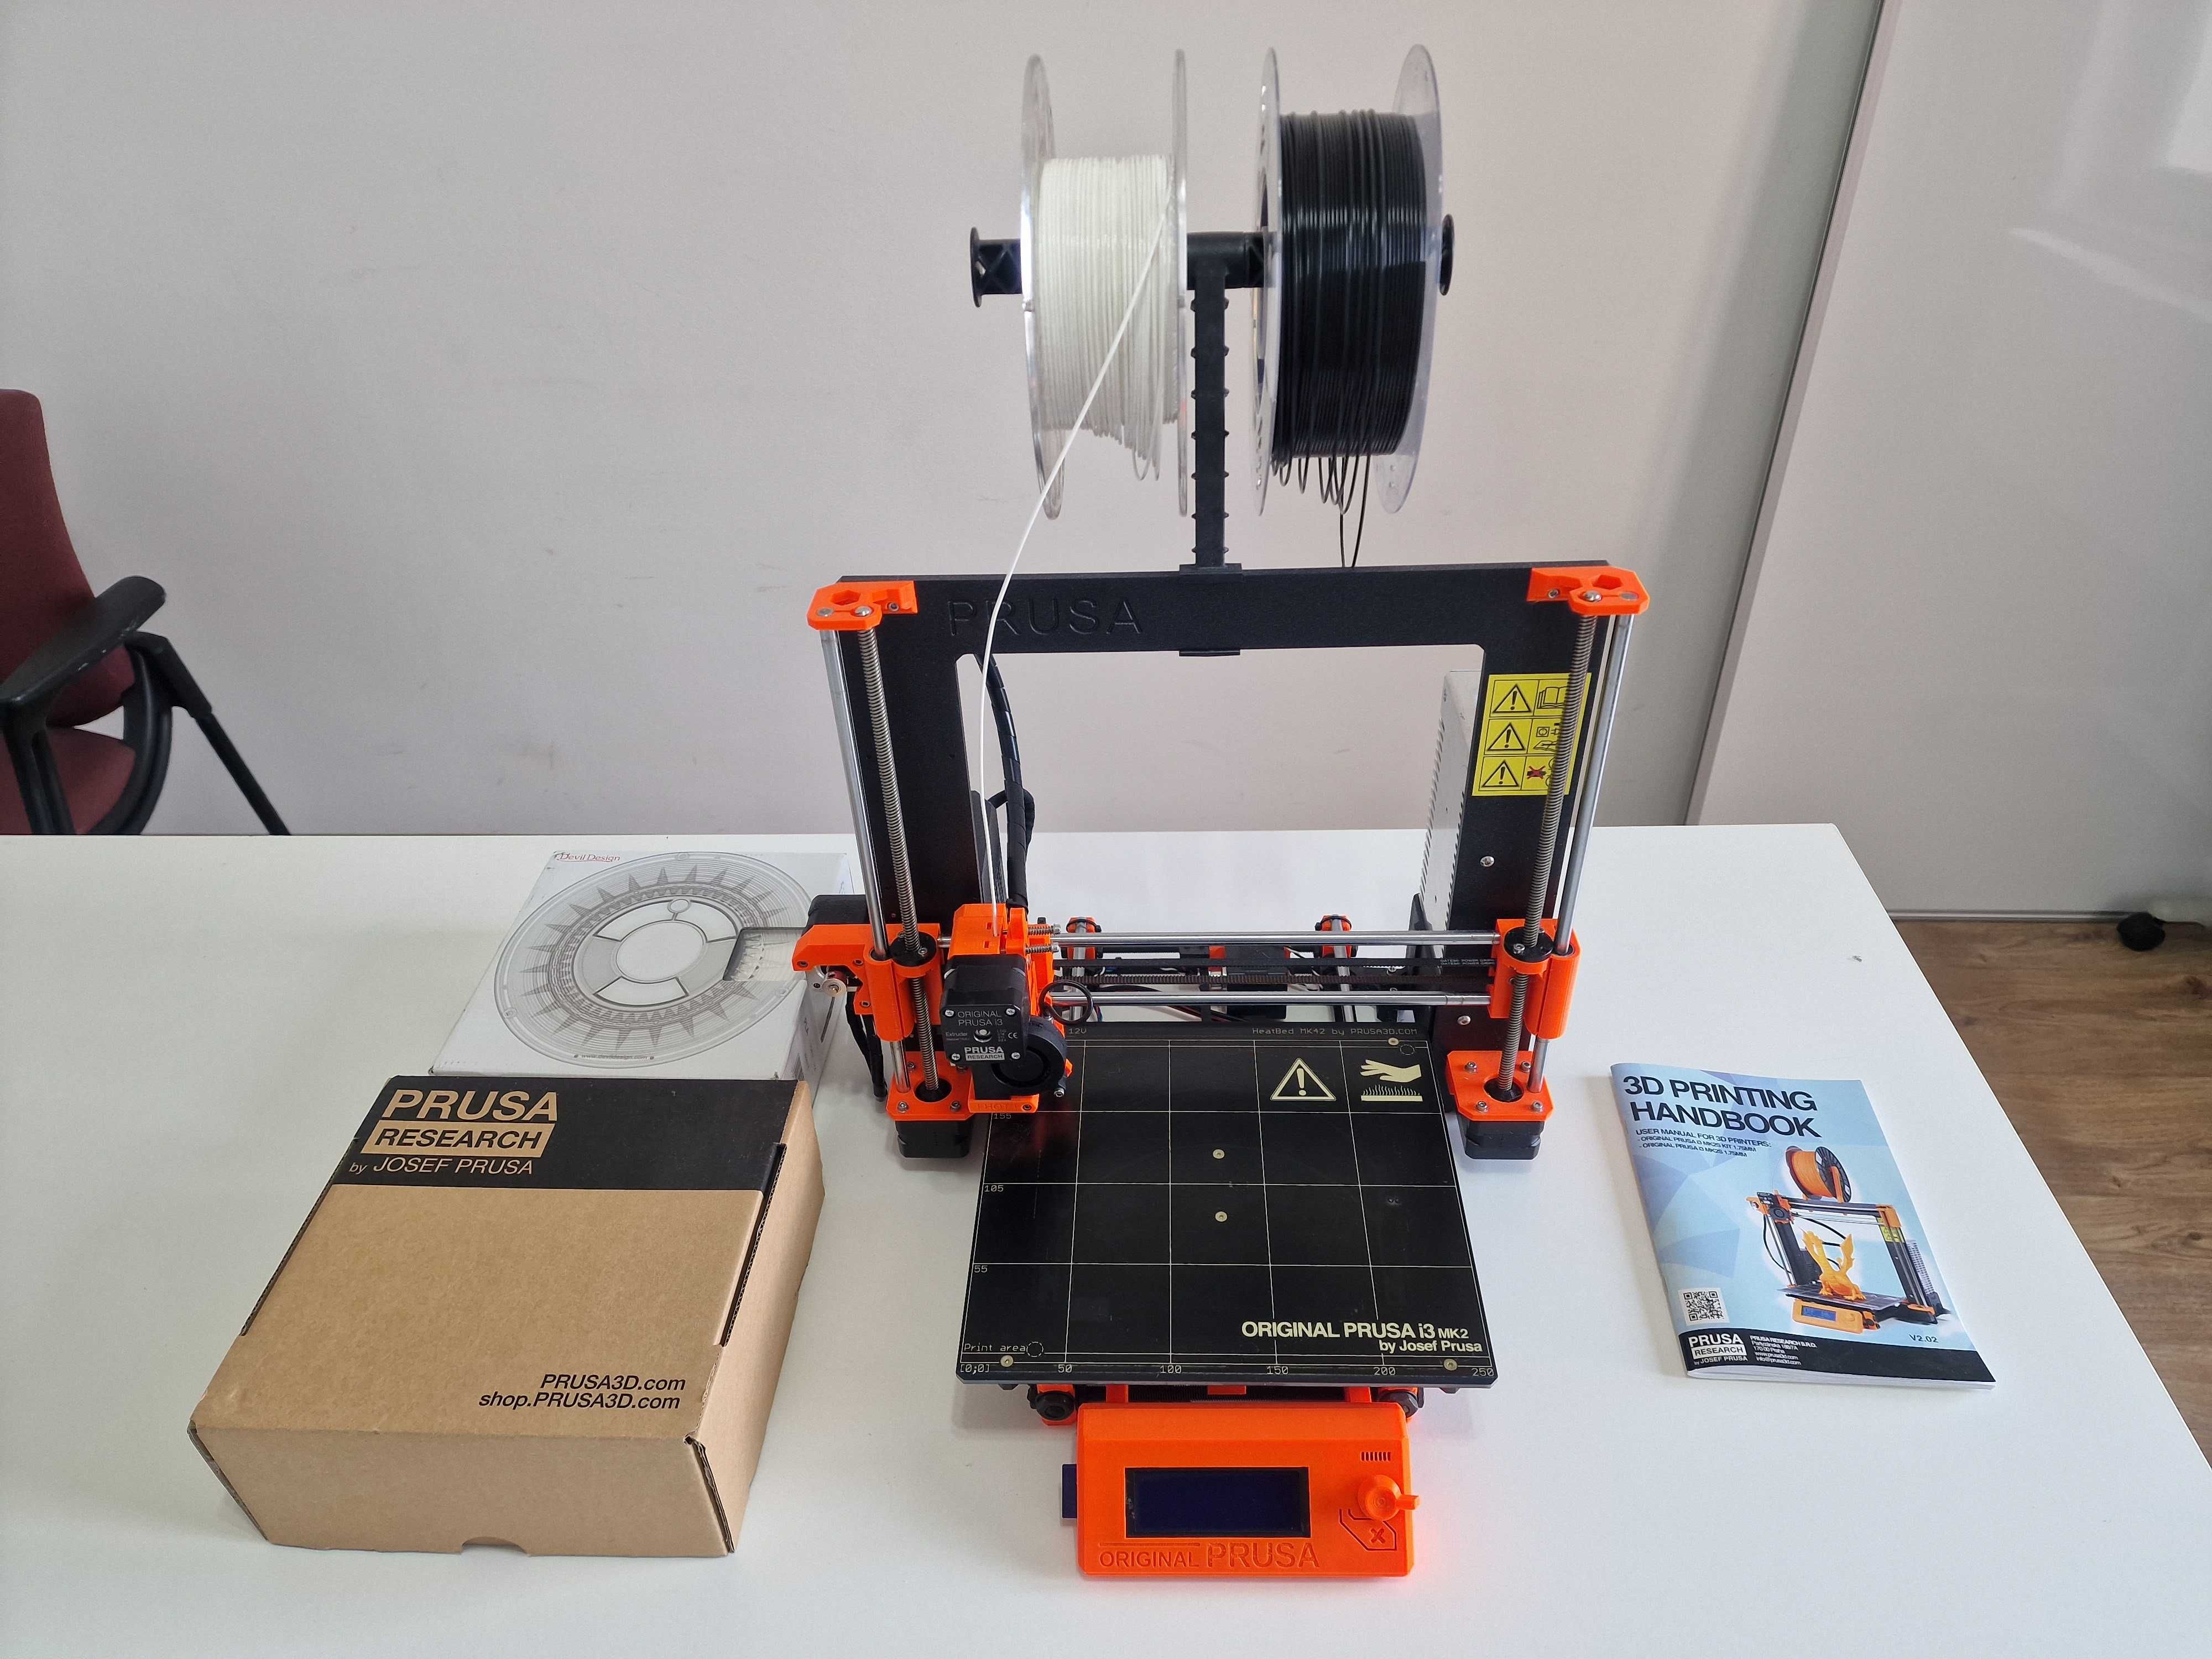 Imprimanta 3D Prusa MK2s - foarte putin folosita